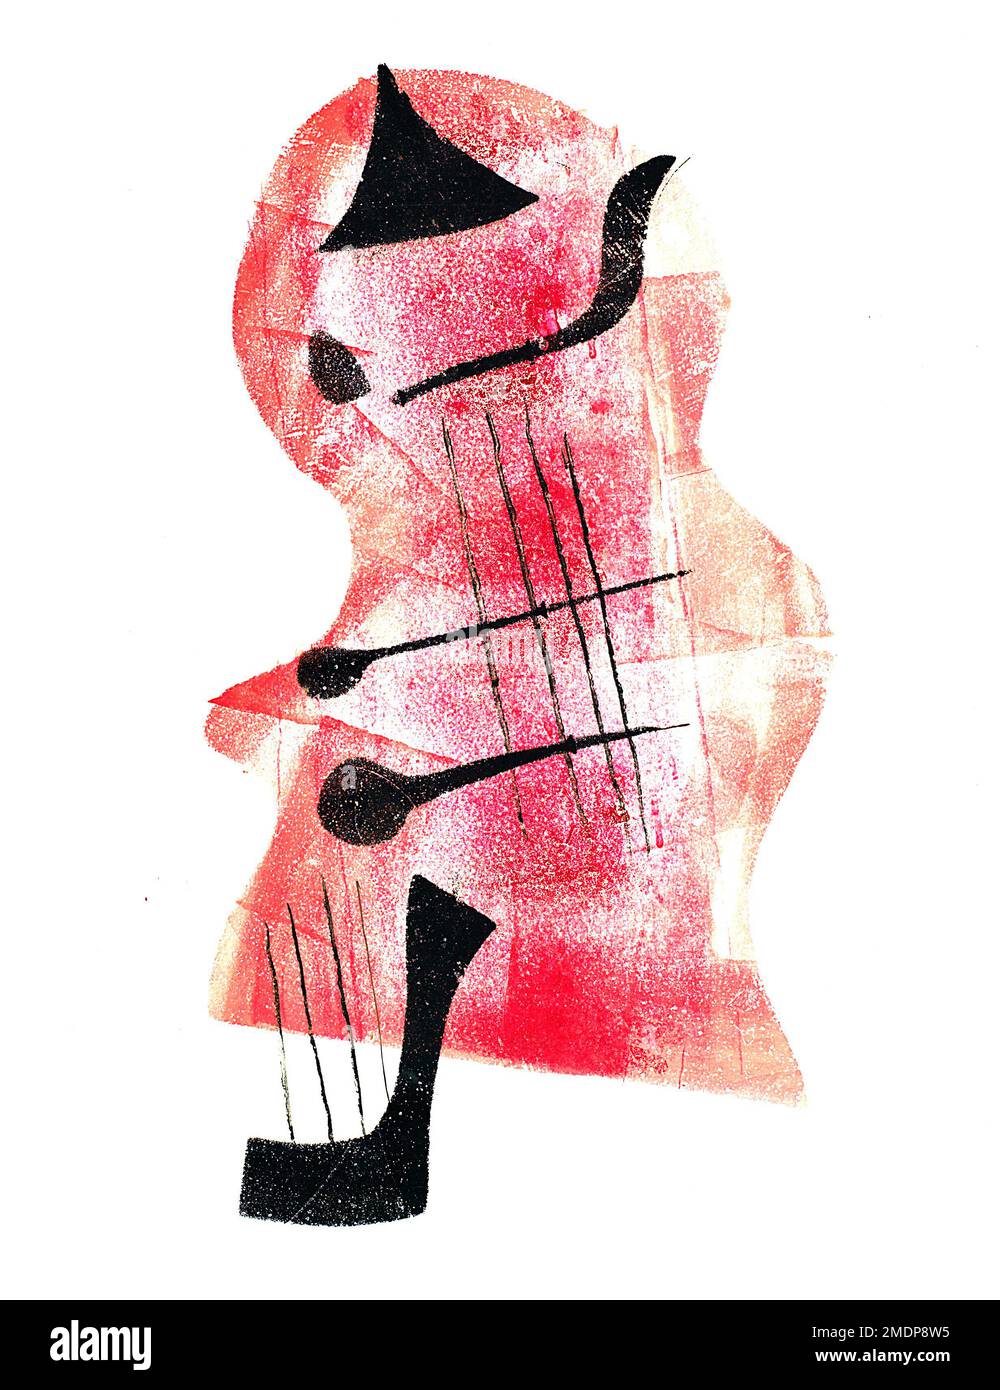 Hendrik Nicolaas Werkman - Art abstrait néerlandais - impression à chaud - Violoncel - Cello - 1937 Banque D'Images